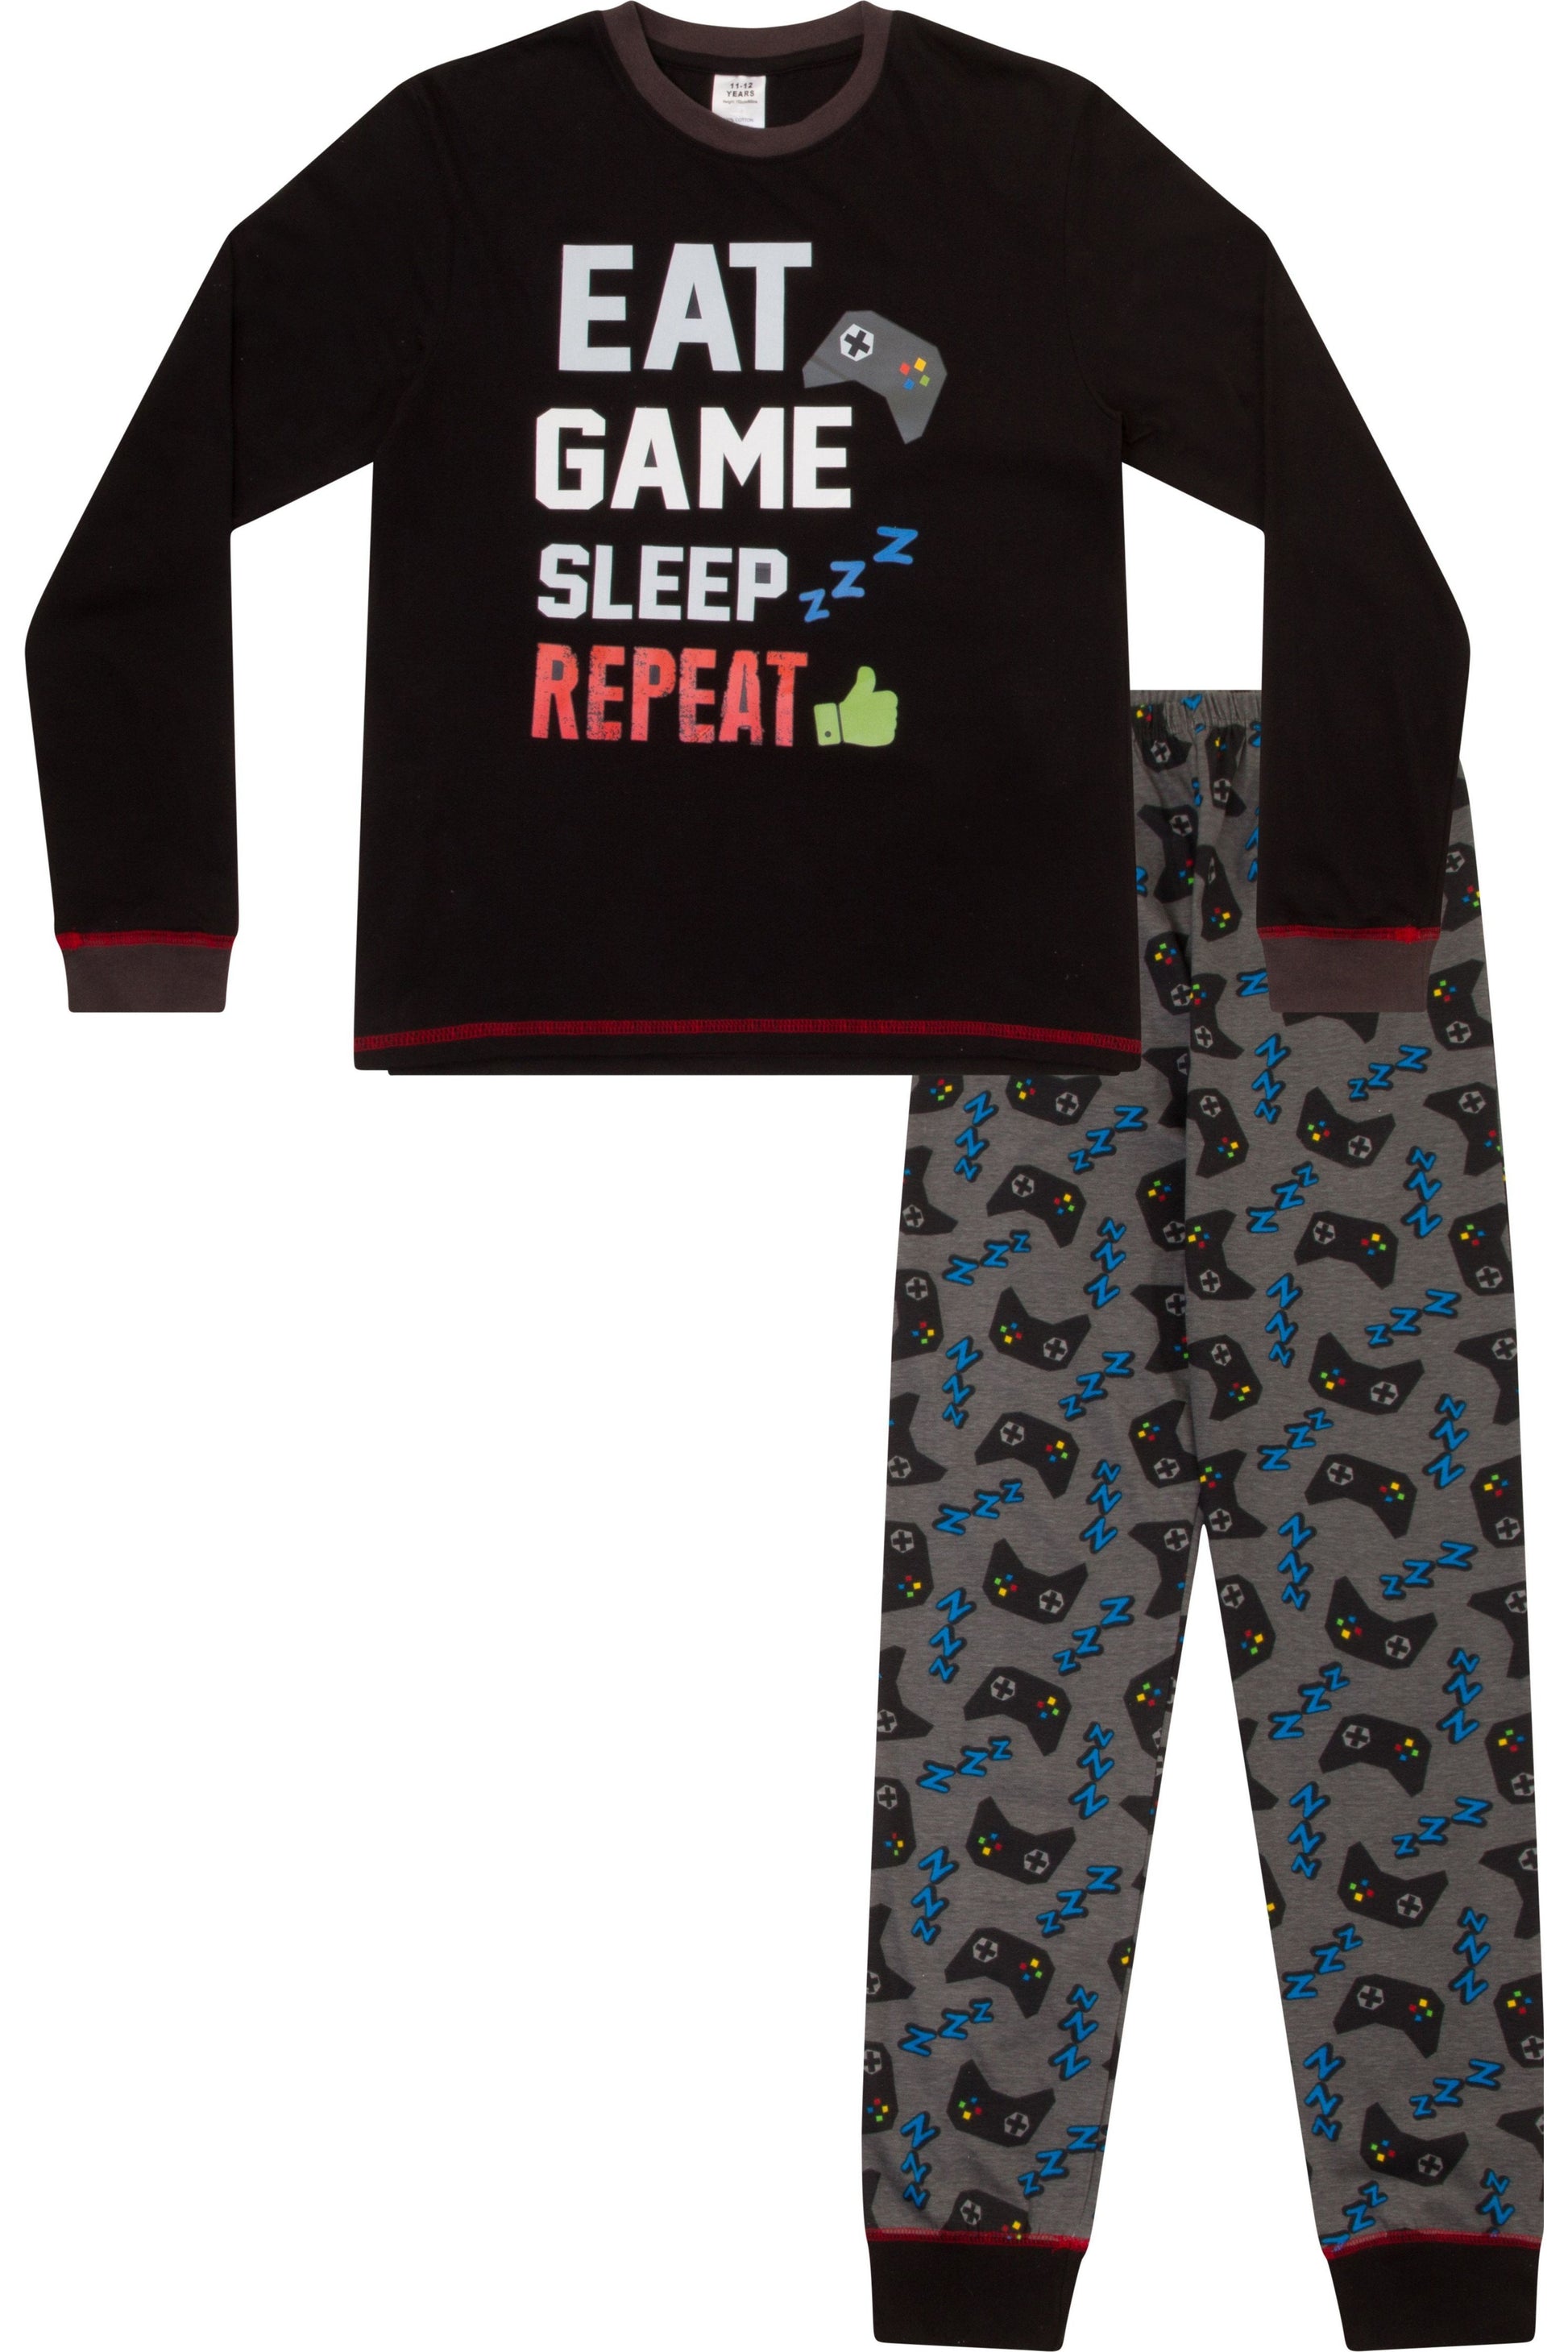 Boys Eat Game Sleep Repeat Long Pyjamas - Pyjamas.com